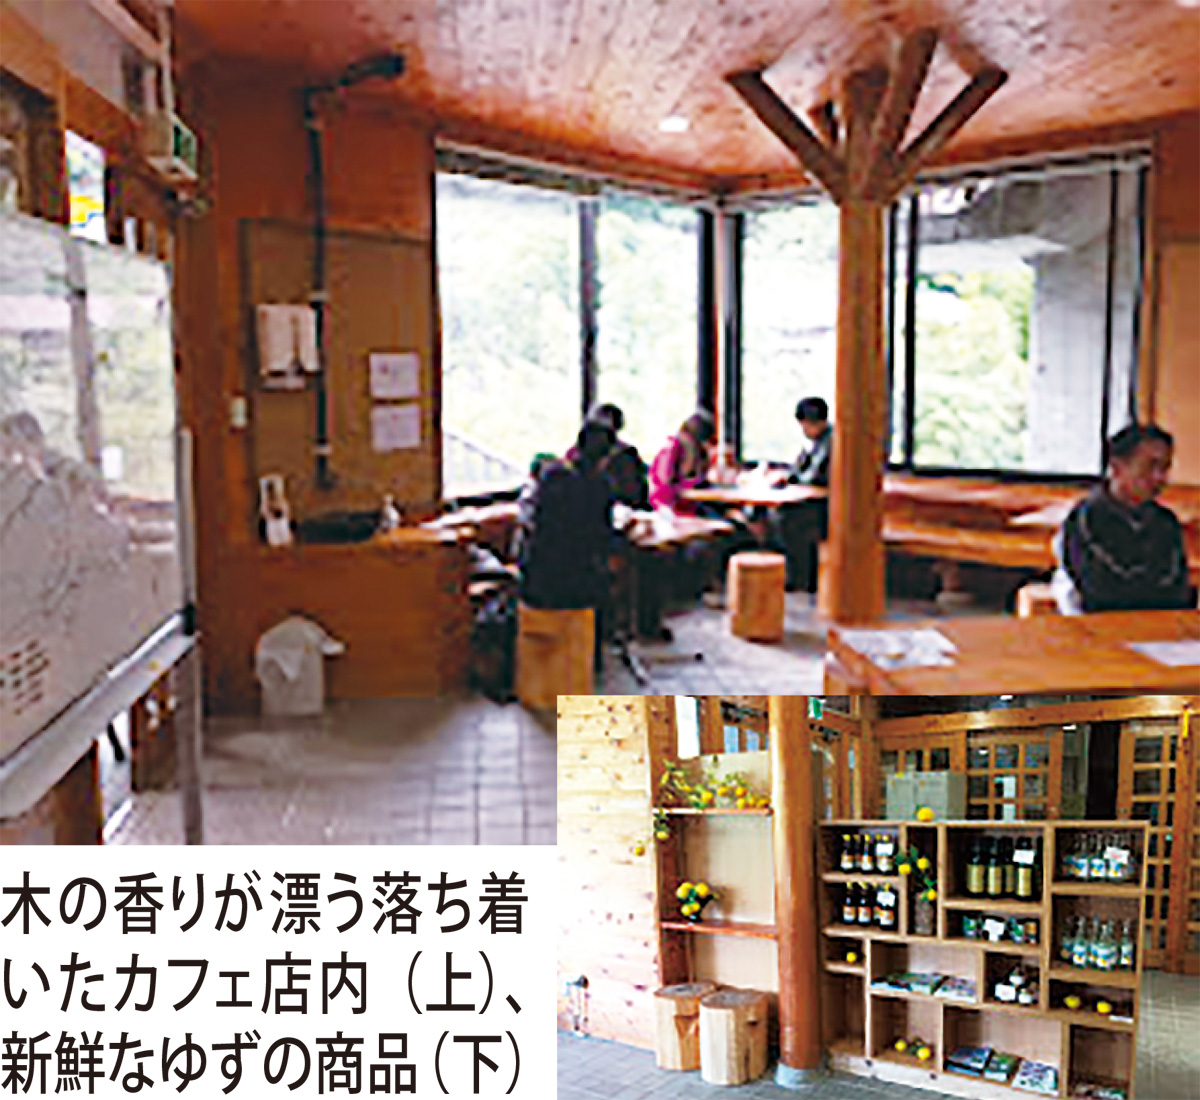 陣馬山麓にカフェが開店